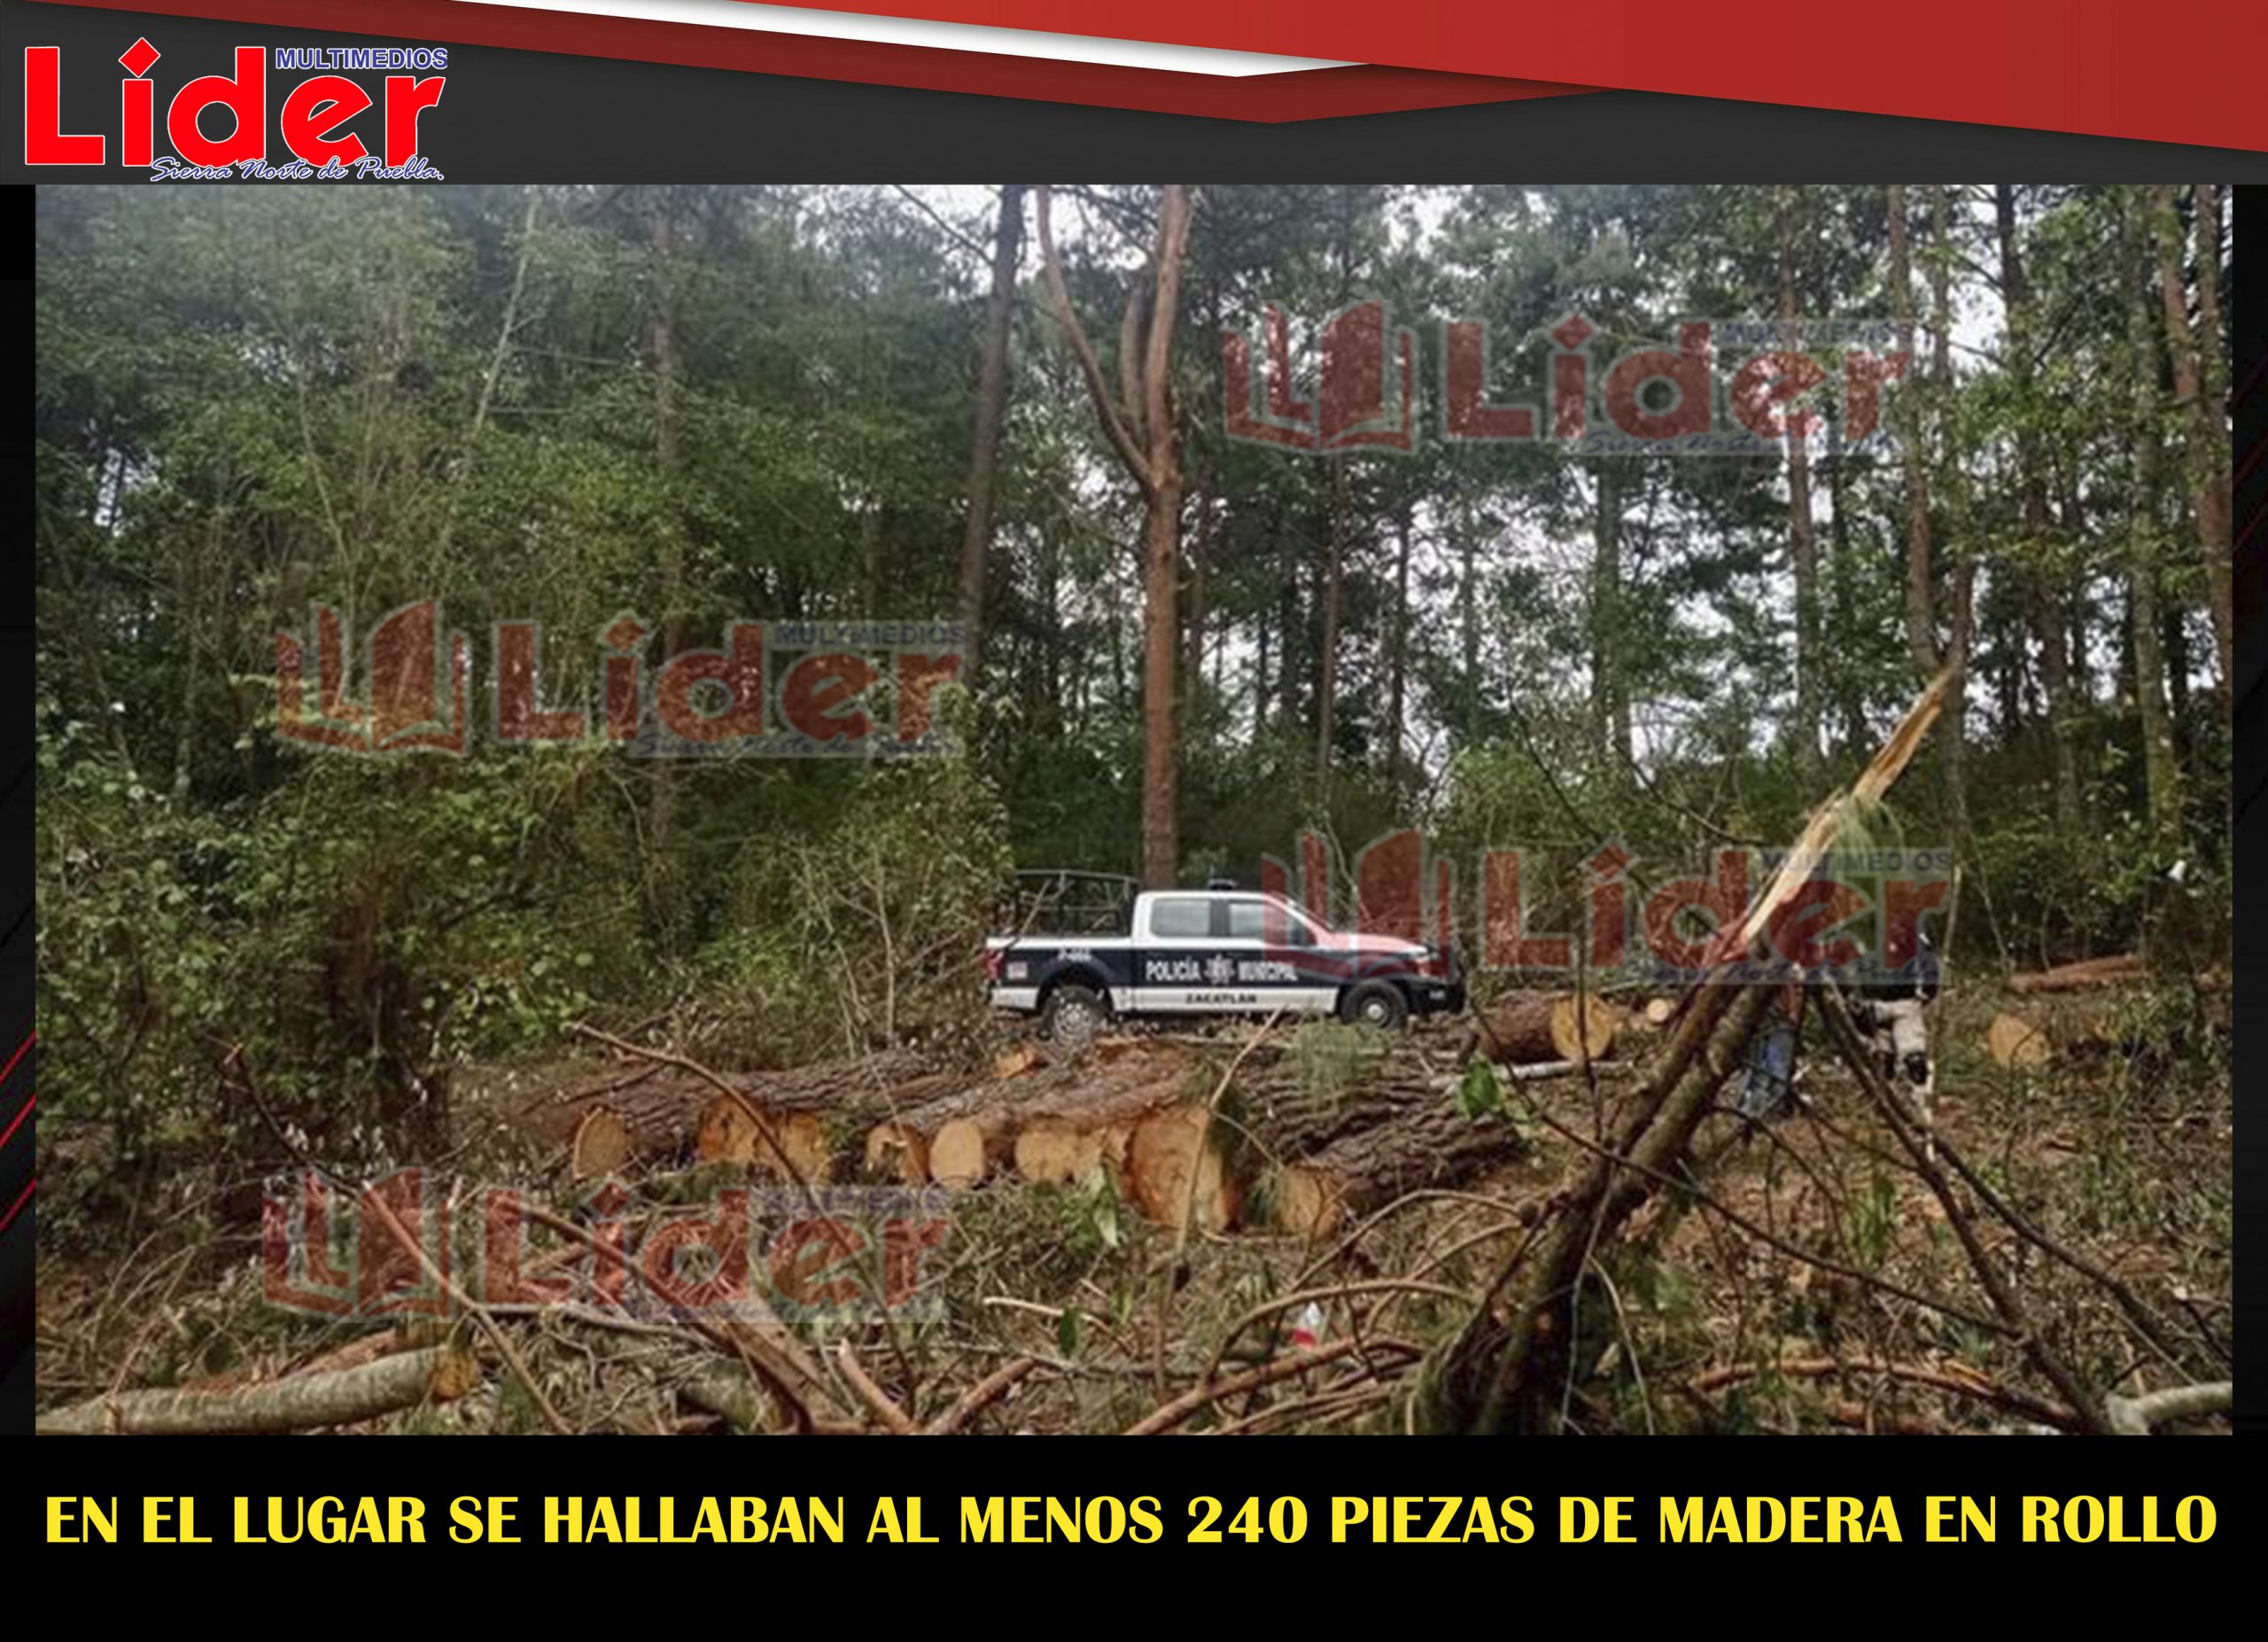 Policía municipal asegura rollos de madera posiblemente ilegal en Zacatlán